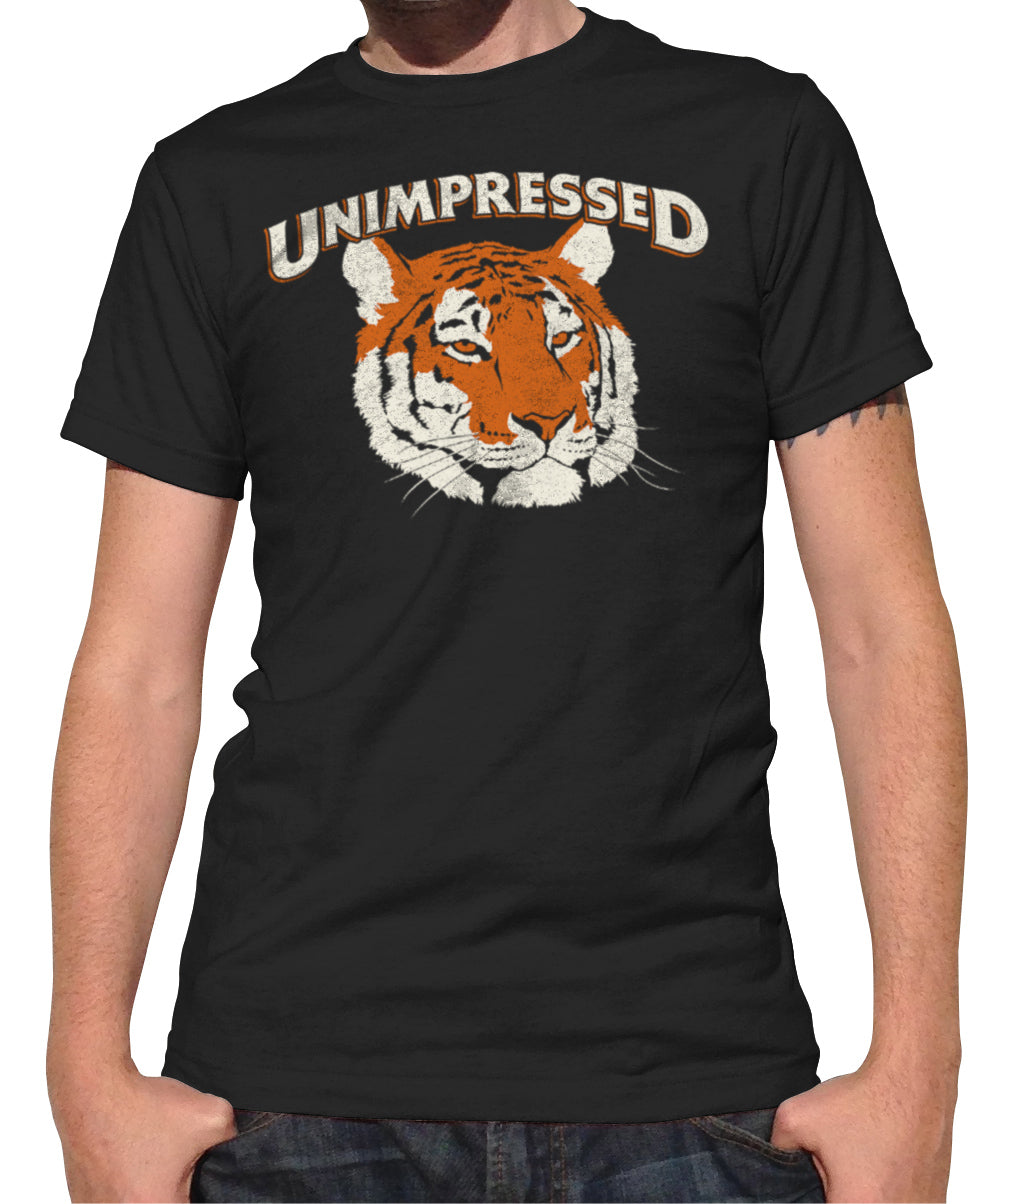 mens tiger t shirt design